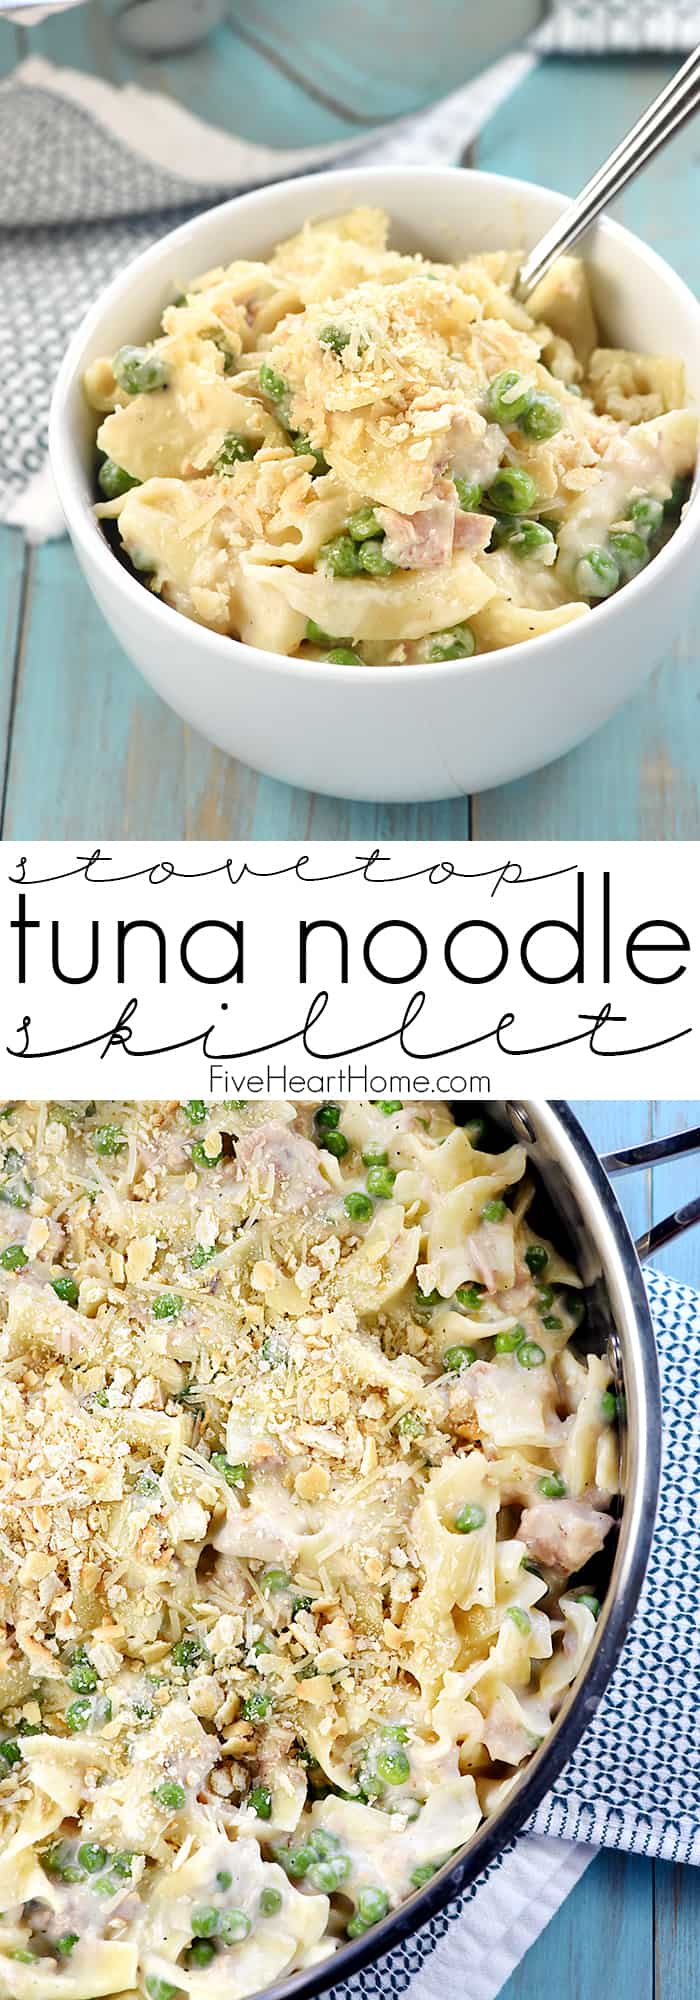 Easy Tuna Noodle Casserole est une recette de dîner rapide, facile, sur la cuisinière, from-scratch, chargée de thon, de nouilles aux œufs, de petits pois et d'une sauce blanche crémeuse, au fromage, faite maison (sans soupe) ! via @fivehearthome